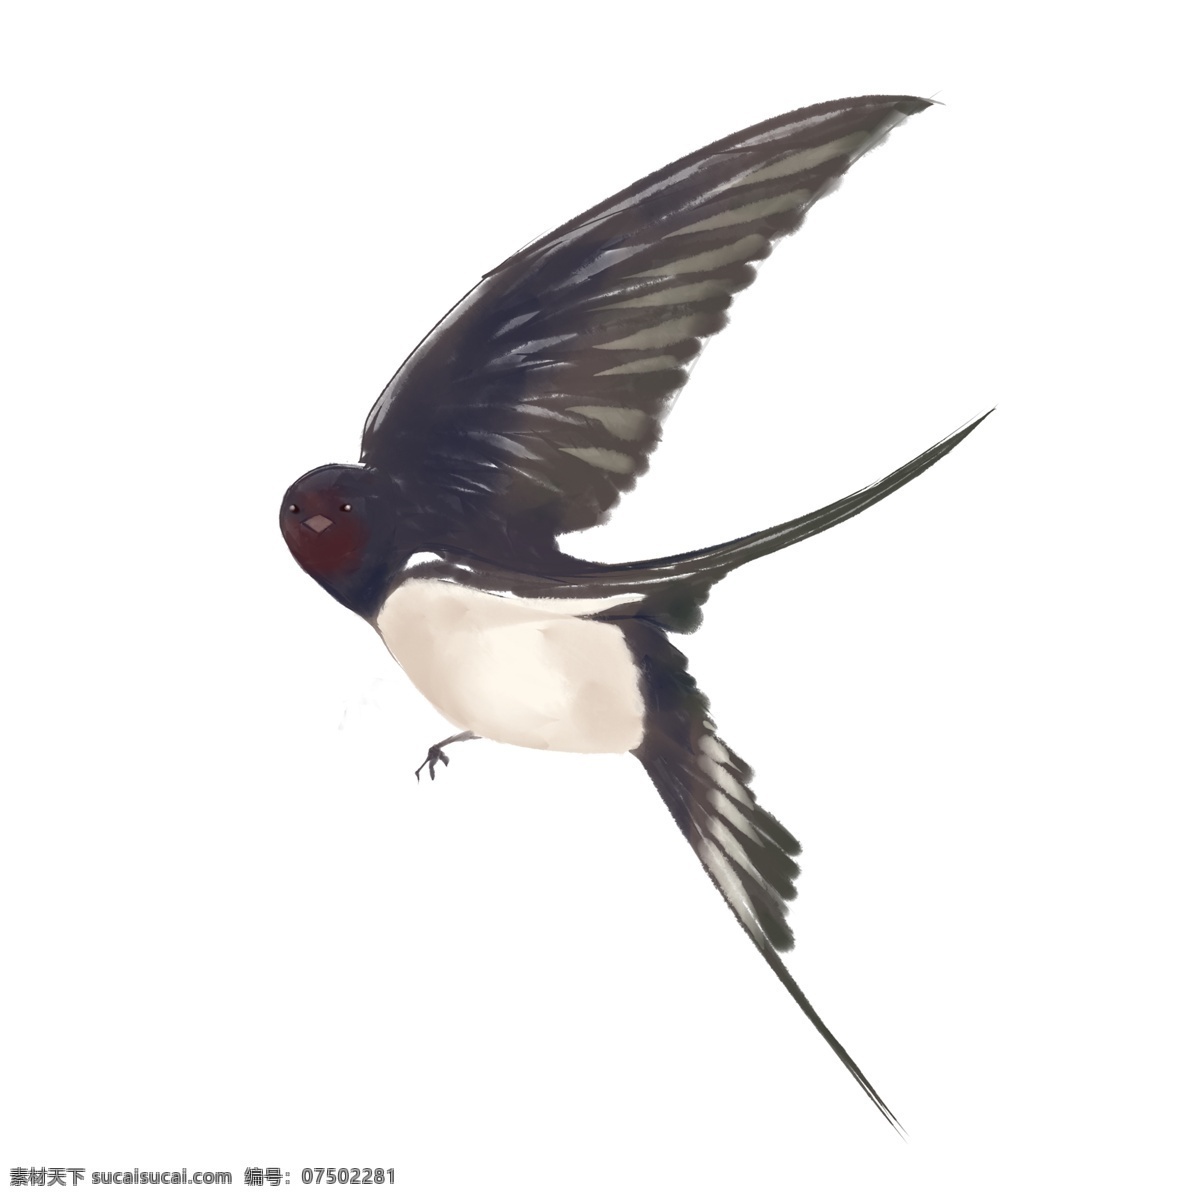 手绘 回头 燕子 插画 可爱的燕子 黑色的燕子 白色的肚子 飞翔的燕子 手绘燕子插画 创意燕子插画